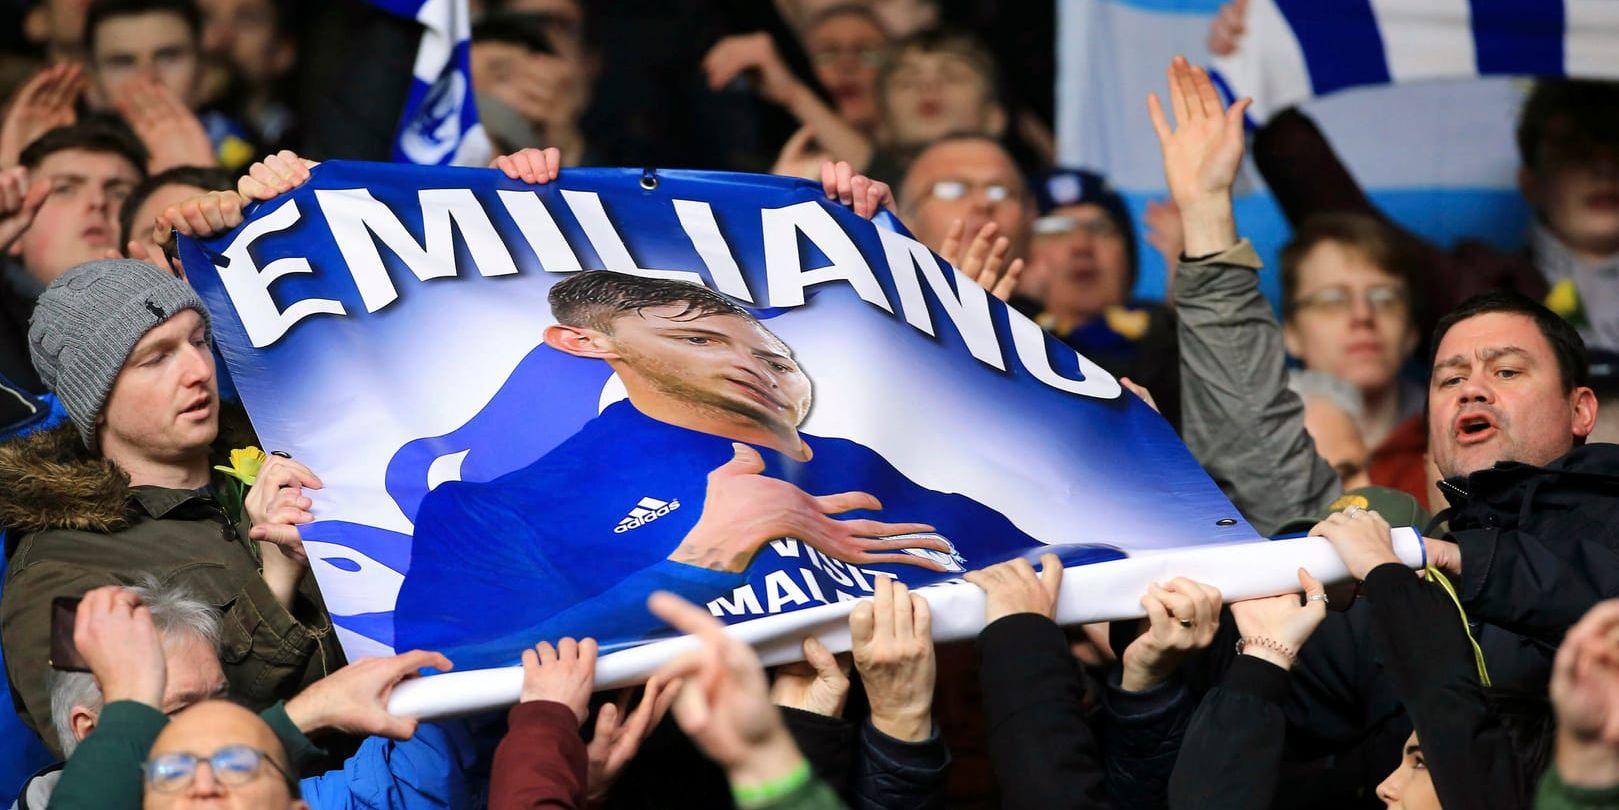 Cardiffs supportrar hedrar den omkomne Emiliano Sala inför bortamatchen mot Southampton, då hemmasupportrar gjorde flygplansgester som de ska straffas för.